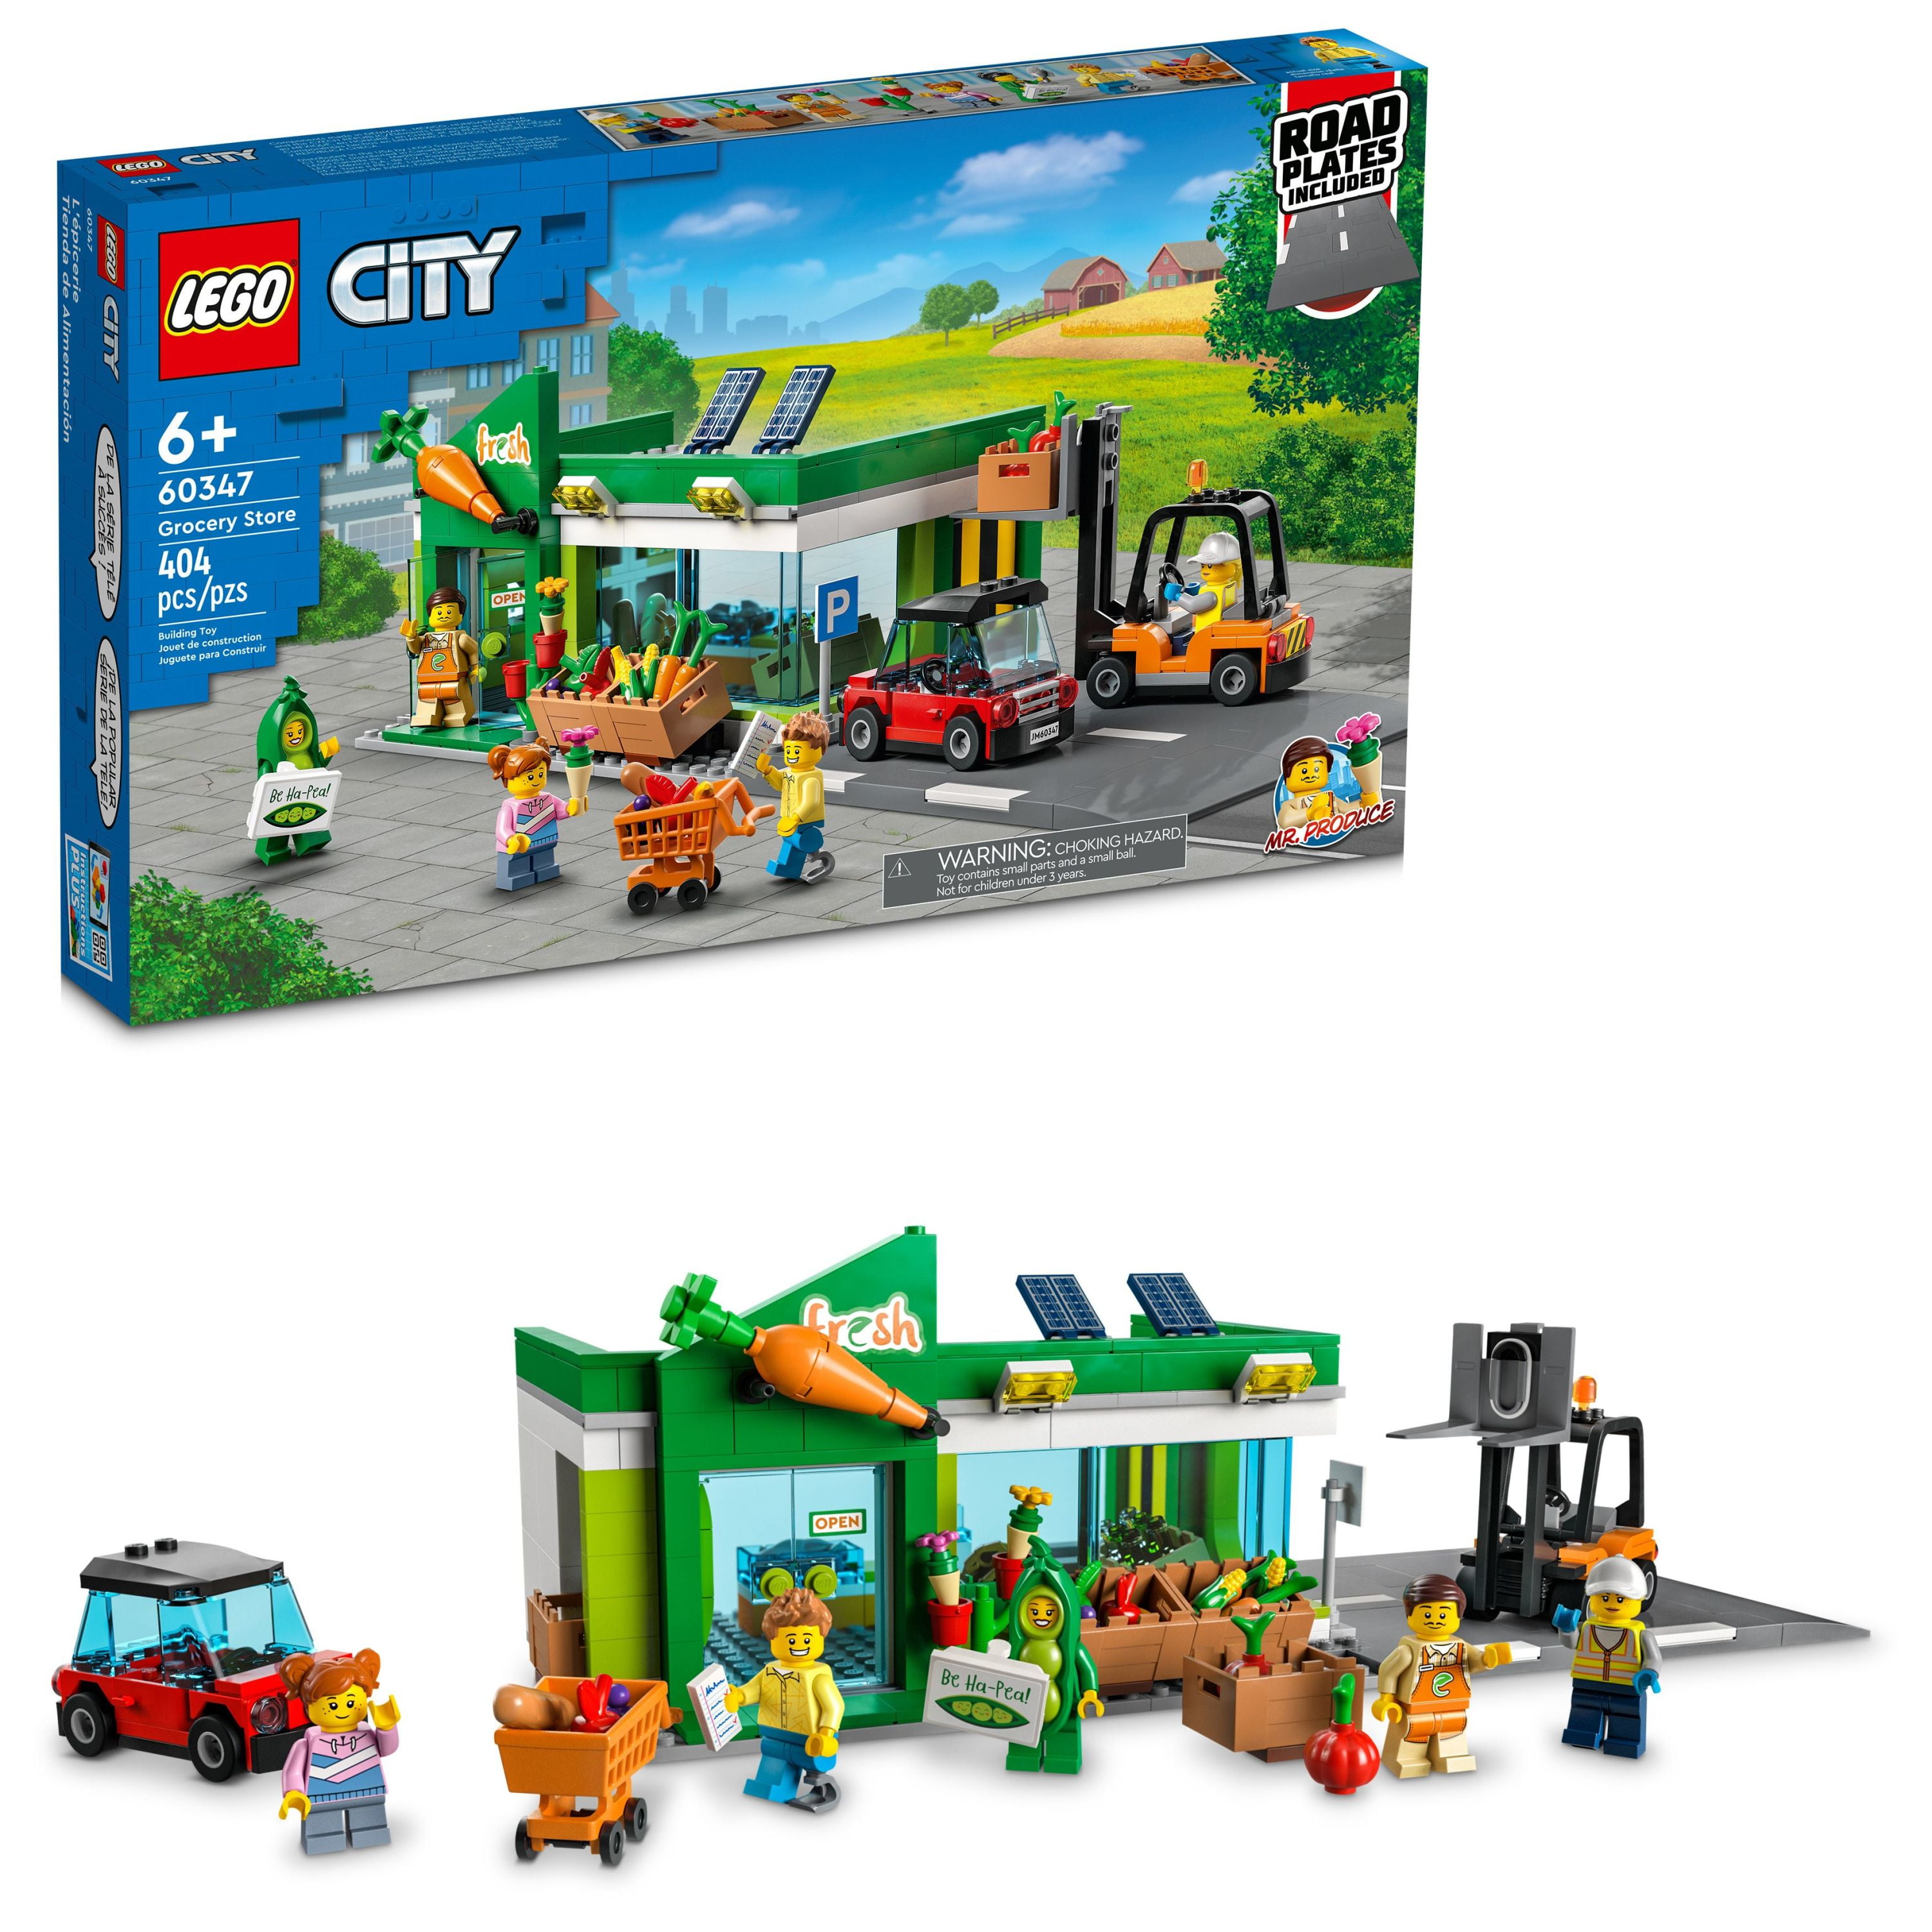 LEGO City Grocery 60347 Set (404 Pieces) Walmart.com